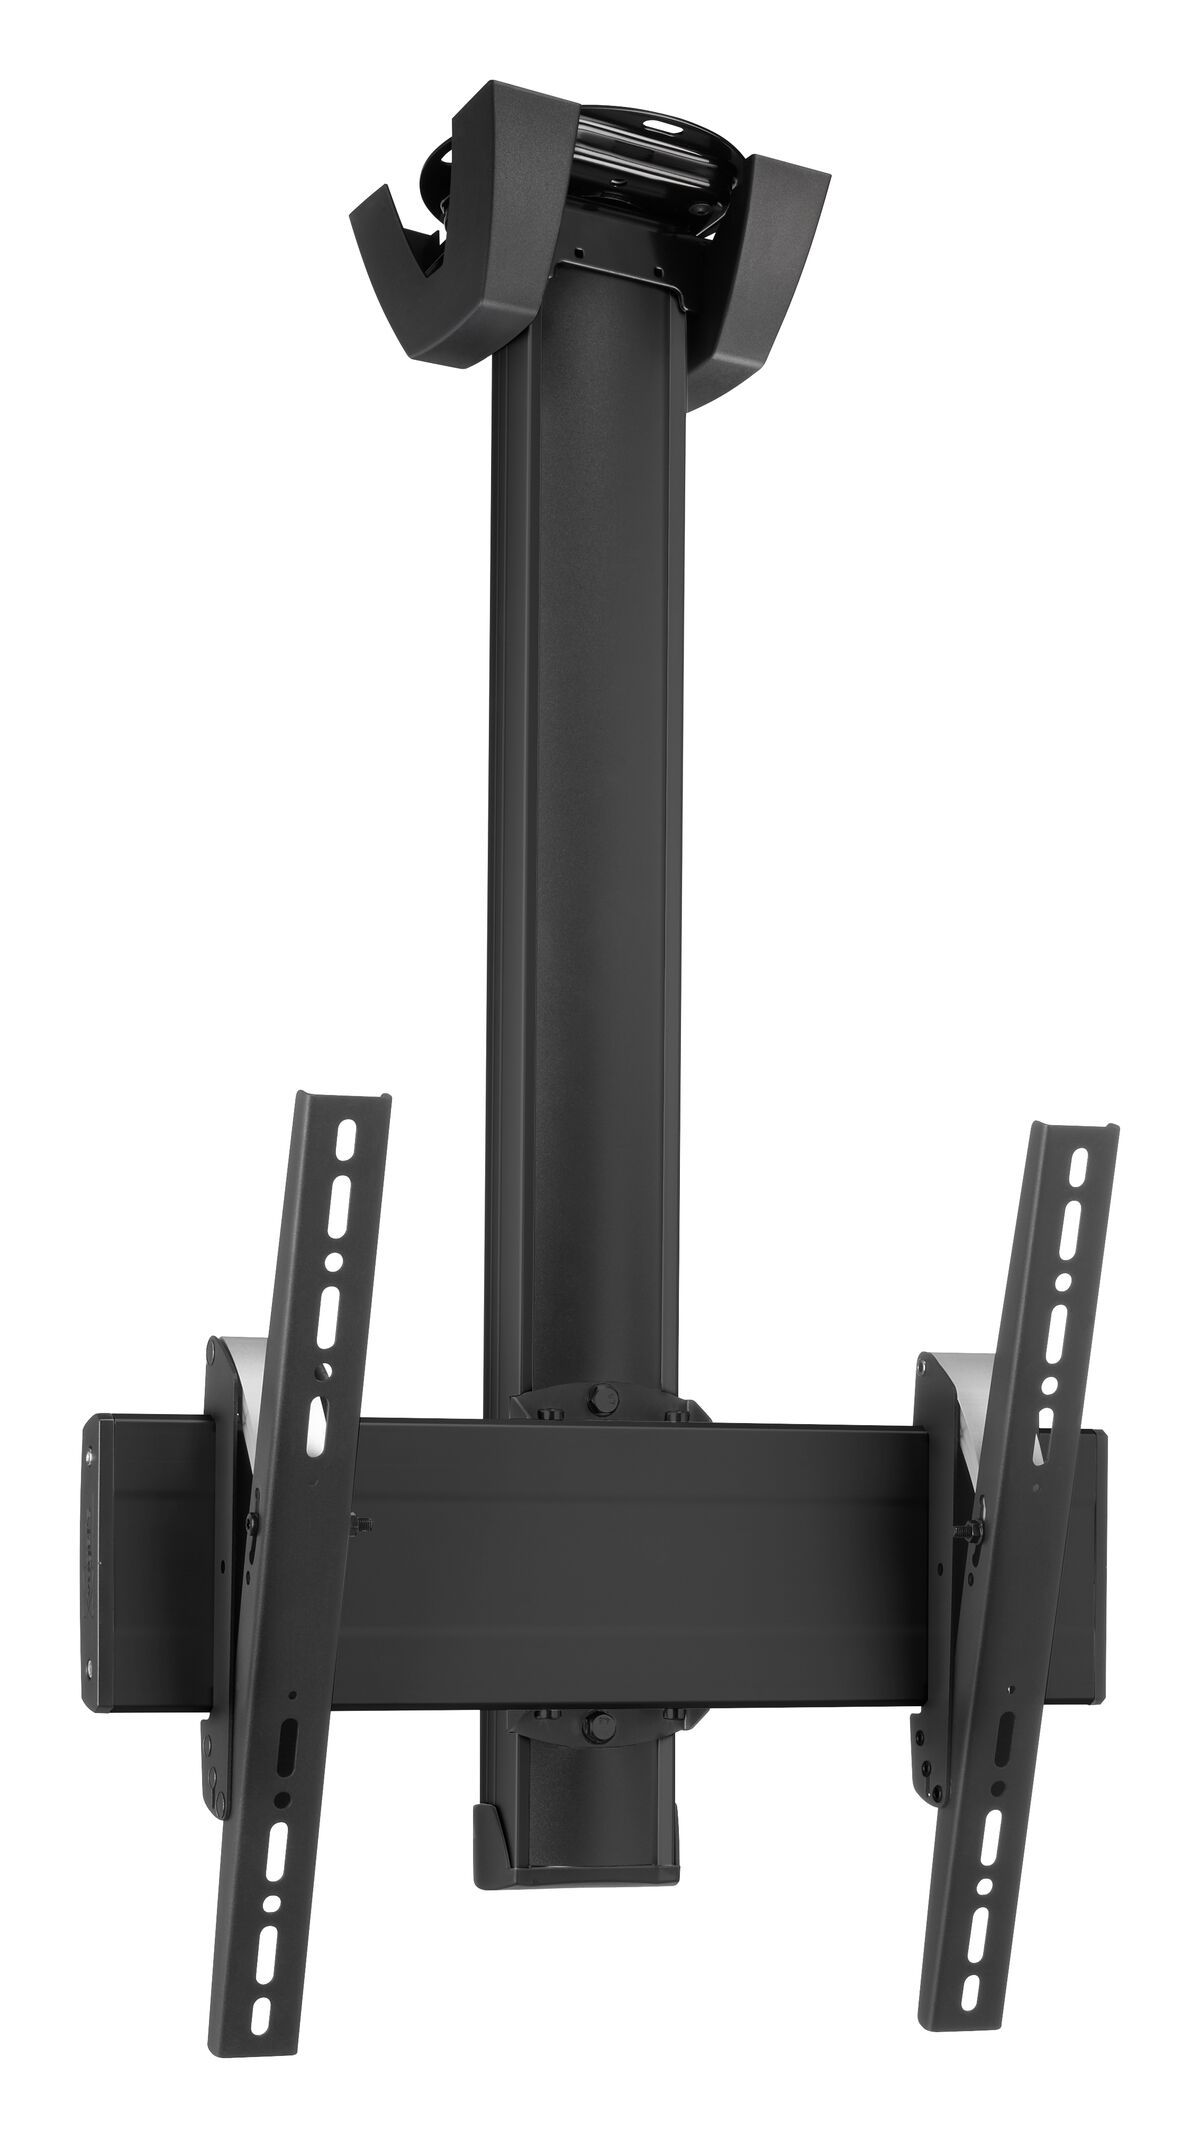 Vogel's CT3044B Display plafondbeugel 360° draaibaar (zwart) - Product